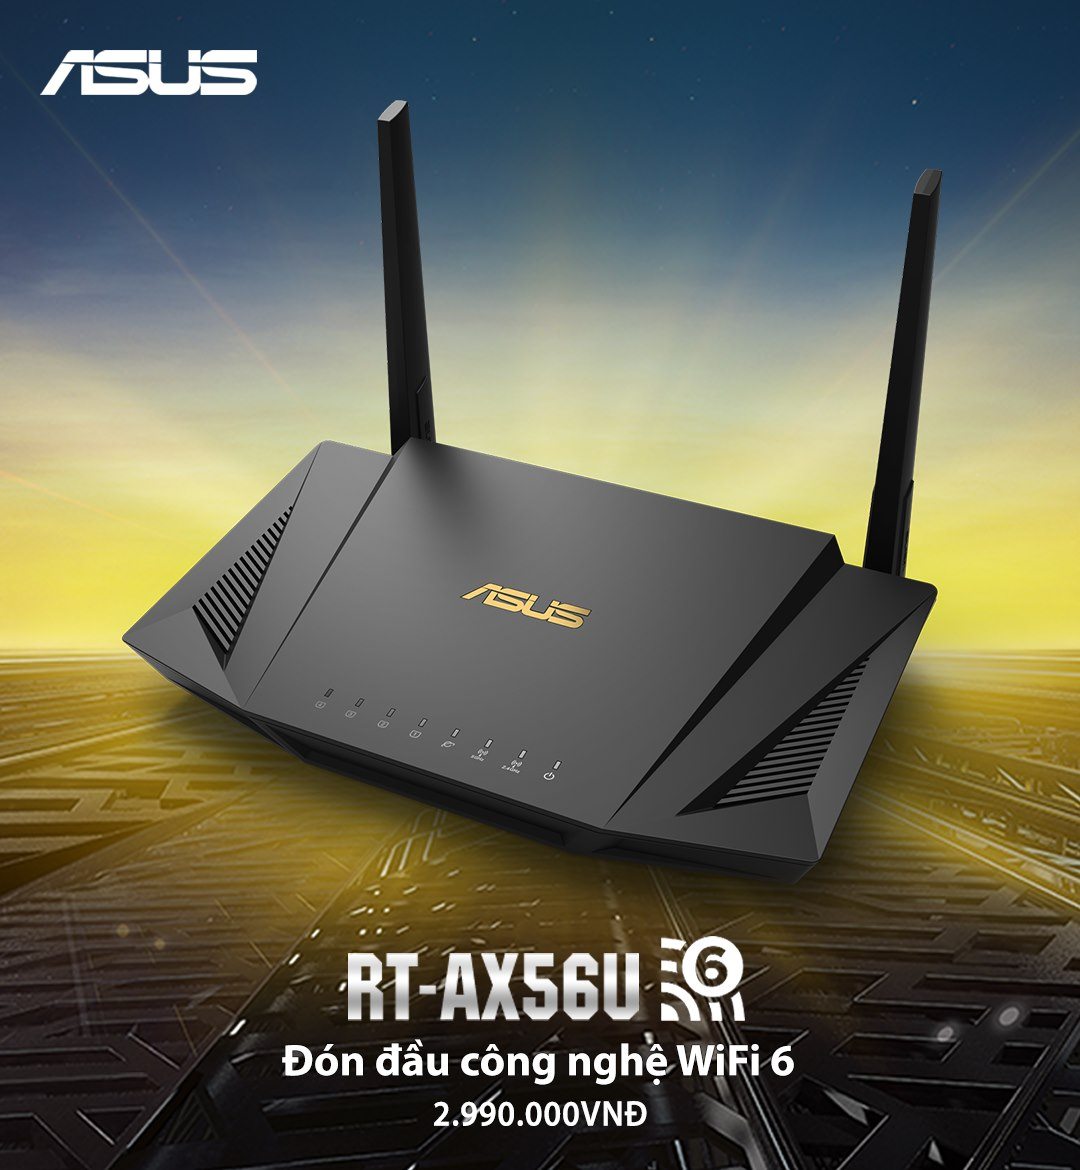 ASUS RT-AX56U: Đem wifi 6 đến với người dùng phổ thông